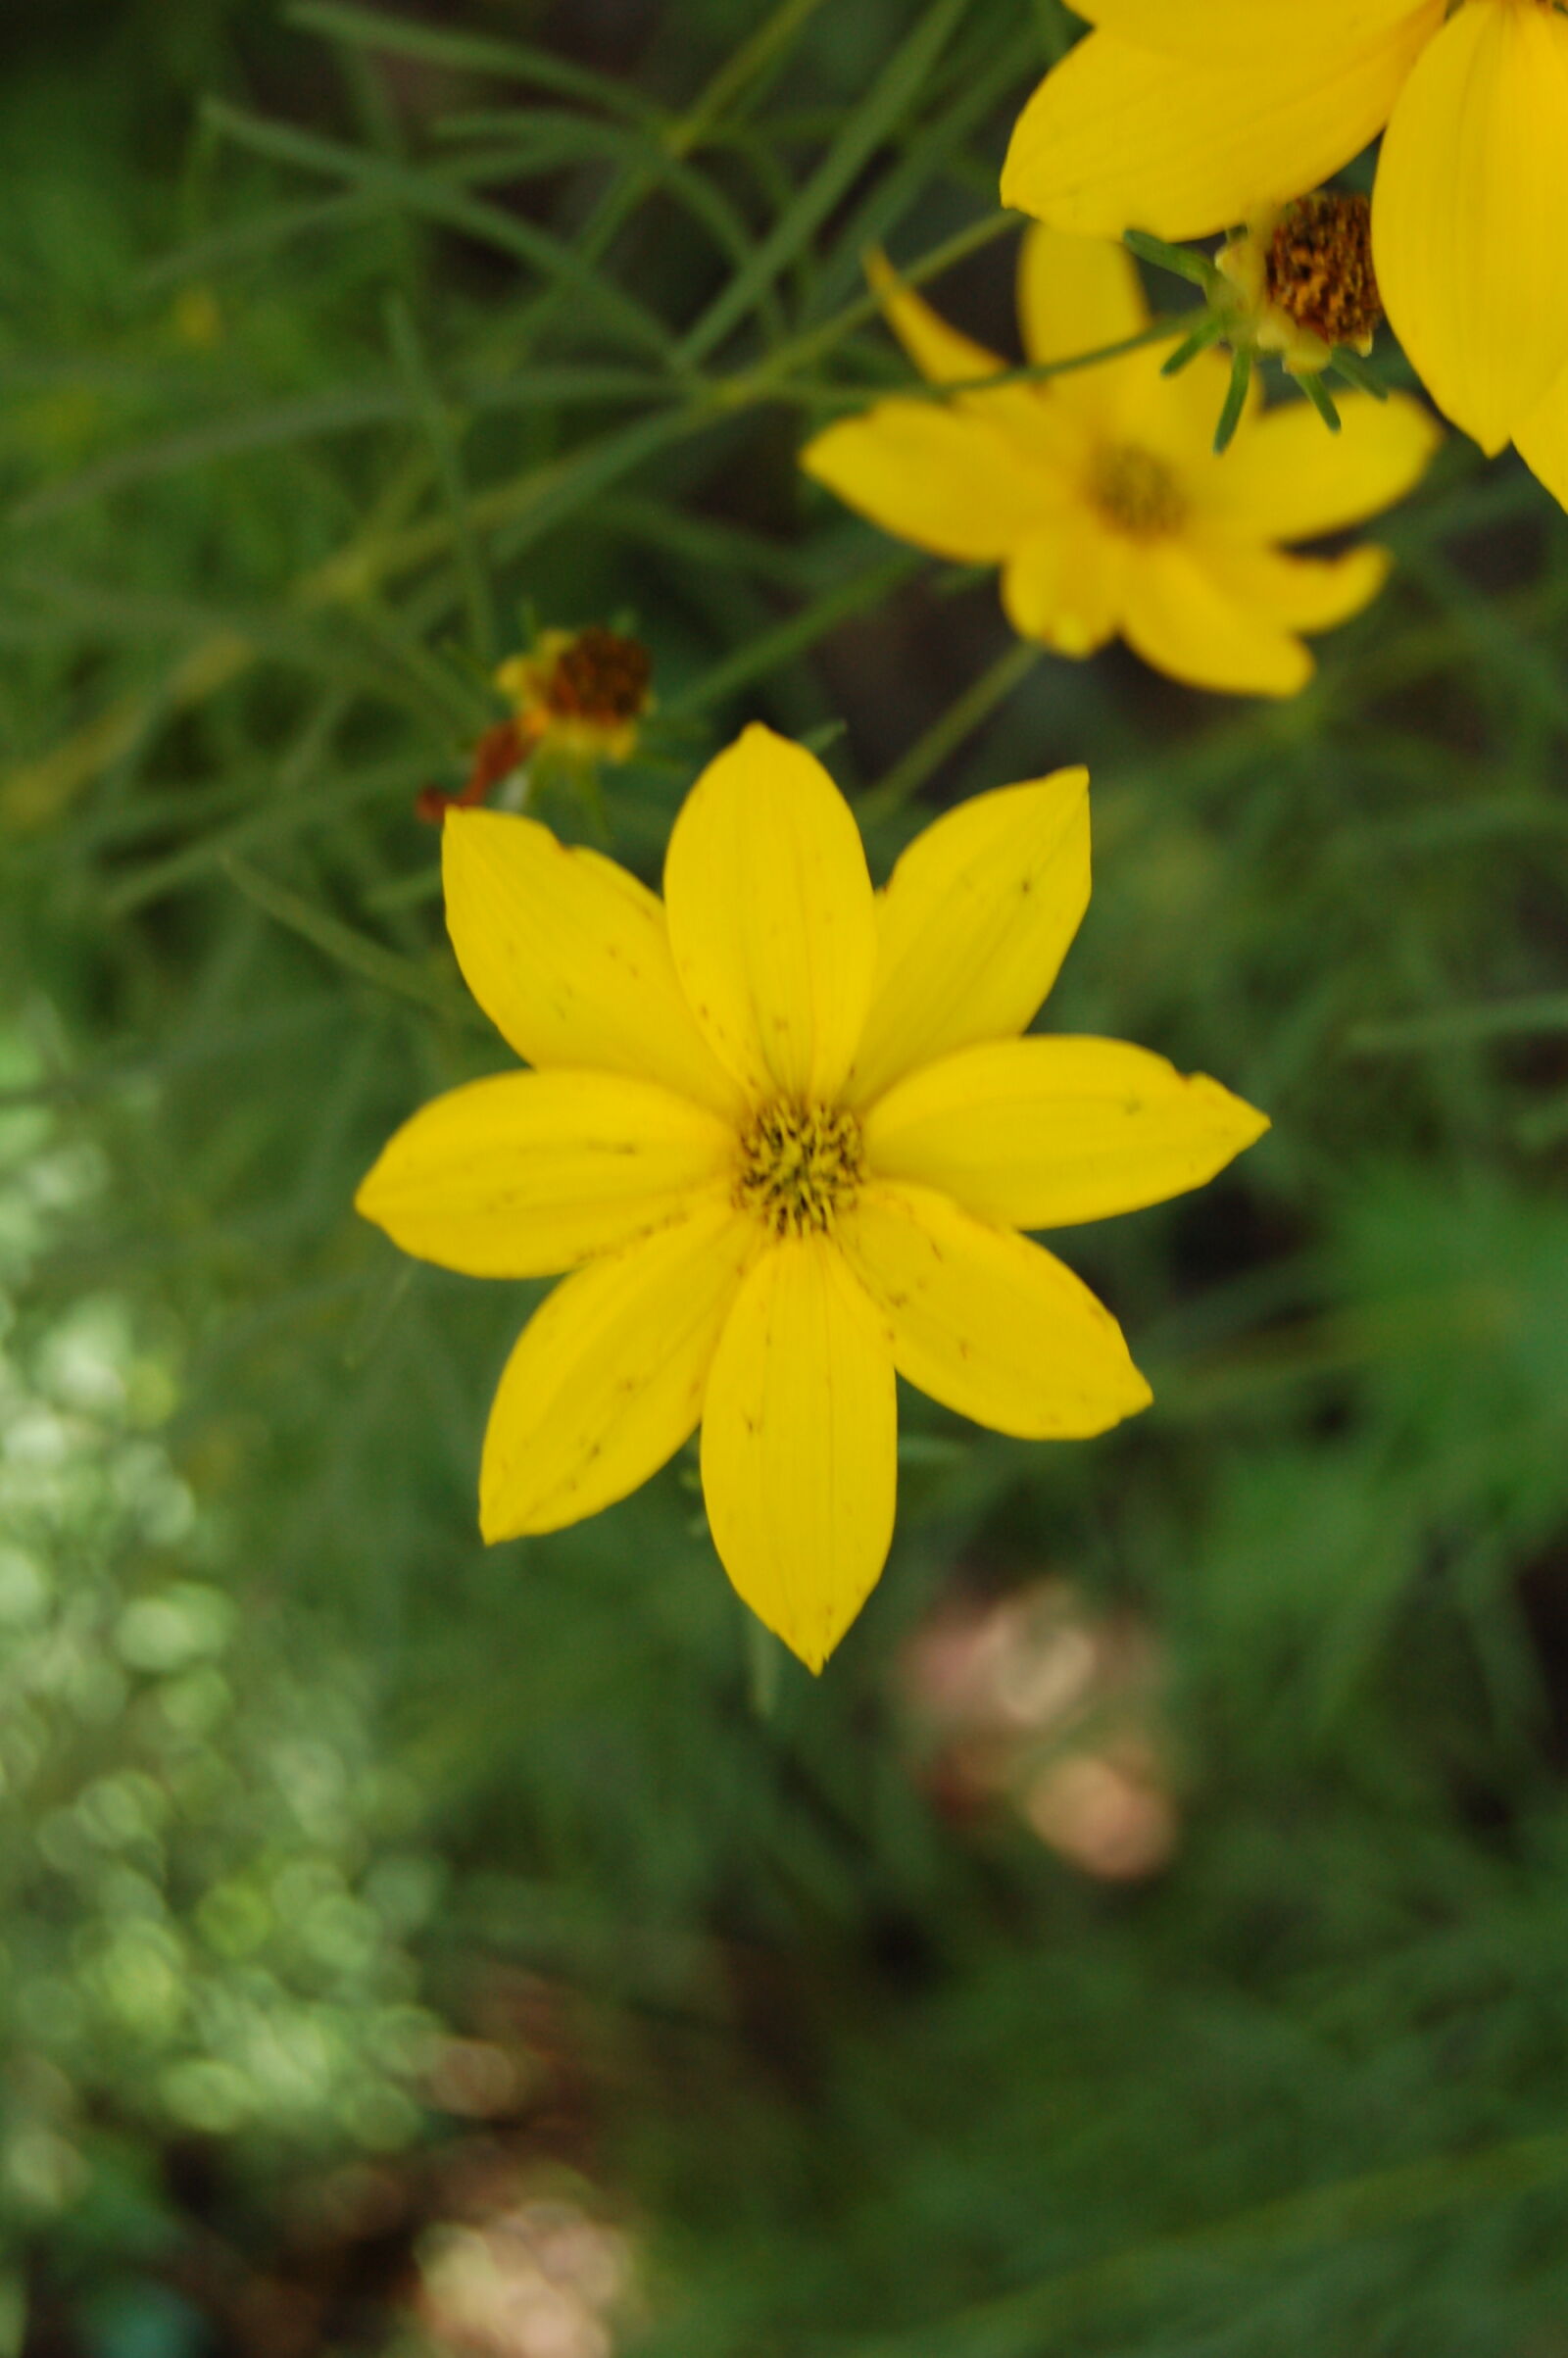 Nikon D50 + AF-S DX Zoom-Nikkor 18-55mm f/3.5-5.6G ED sample photo. Flower, golden, flower, yellow photography